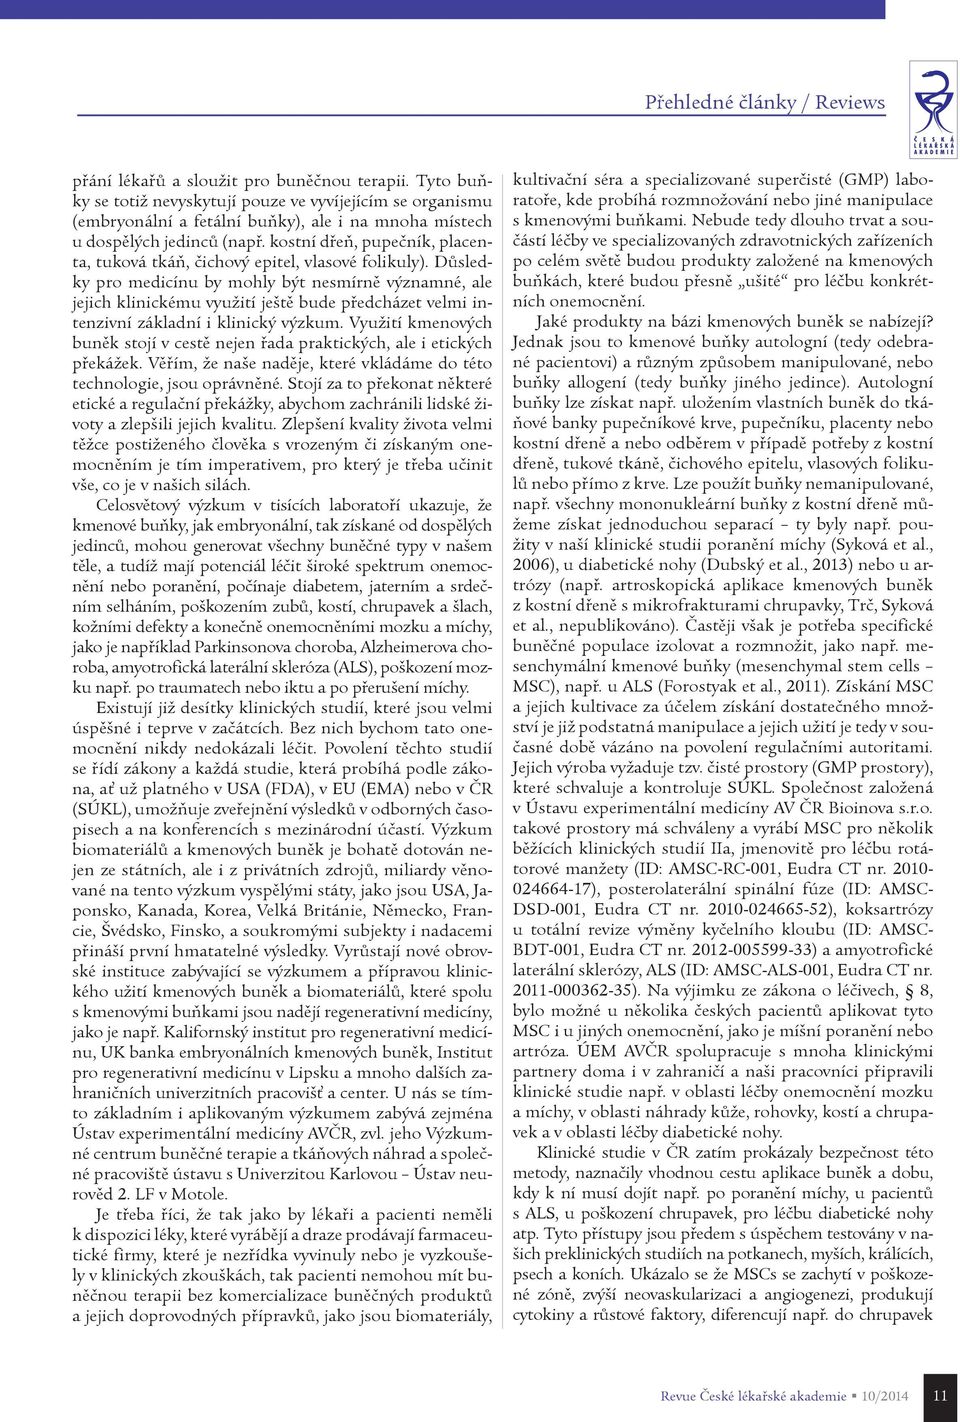 Dùsledky pro medicínu by mohly být nesmírnì významné, ale jejich klinickému využití ještì bude pøedcházet velmi intenzivní základní i klinický výzkum.